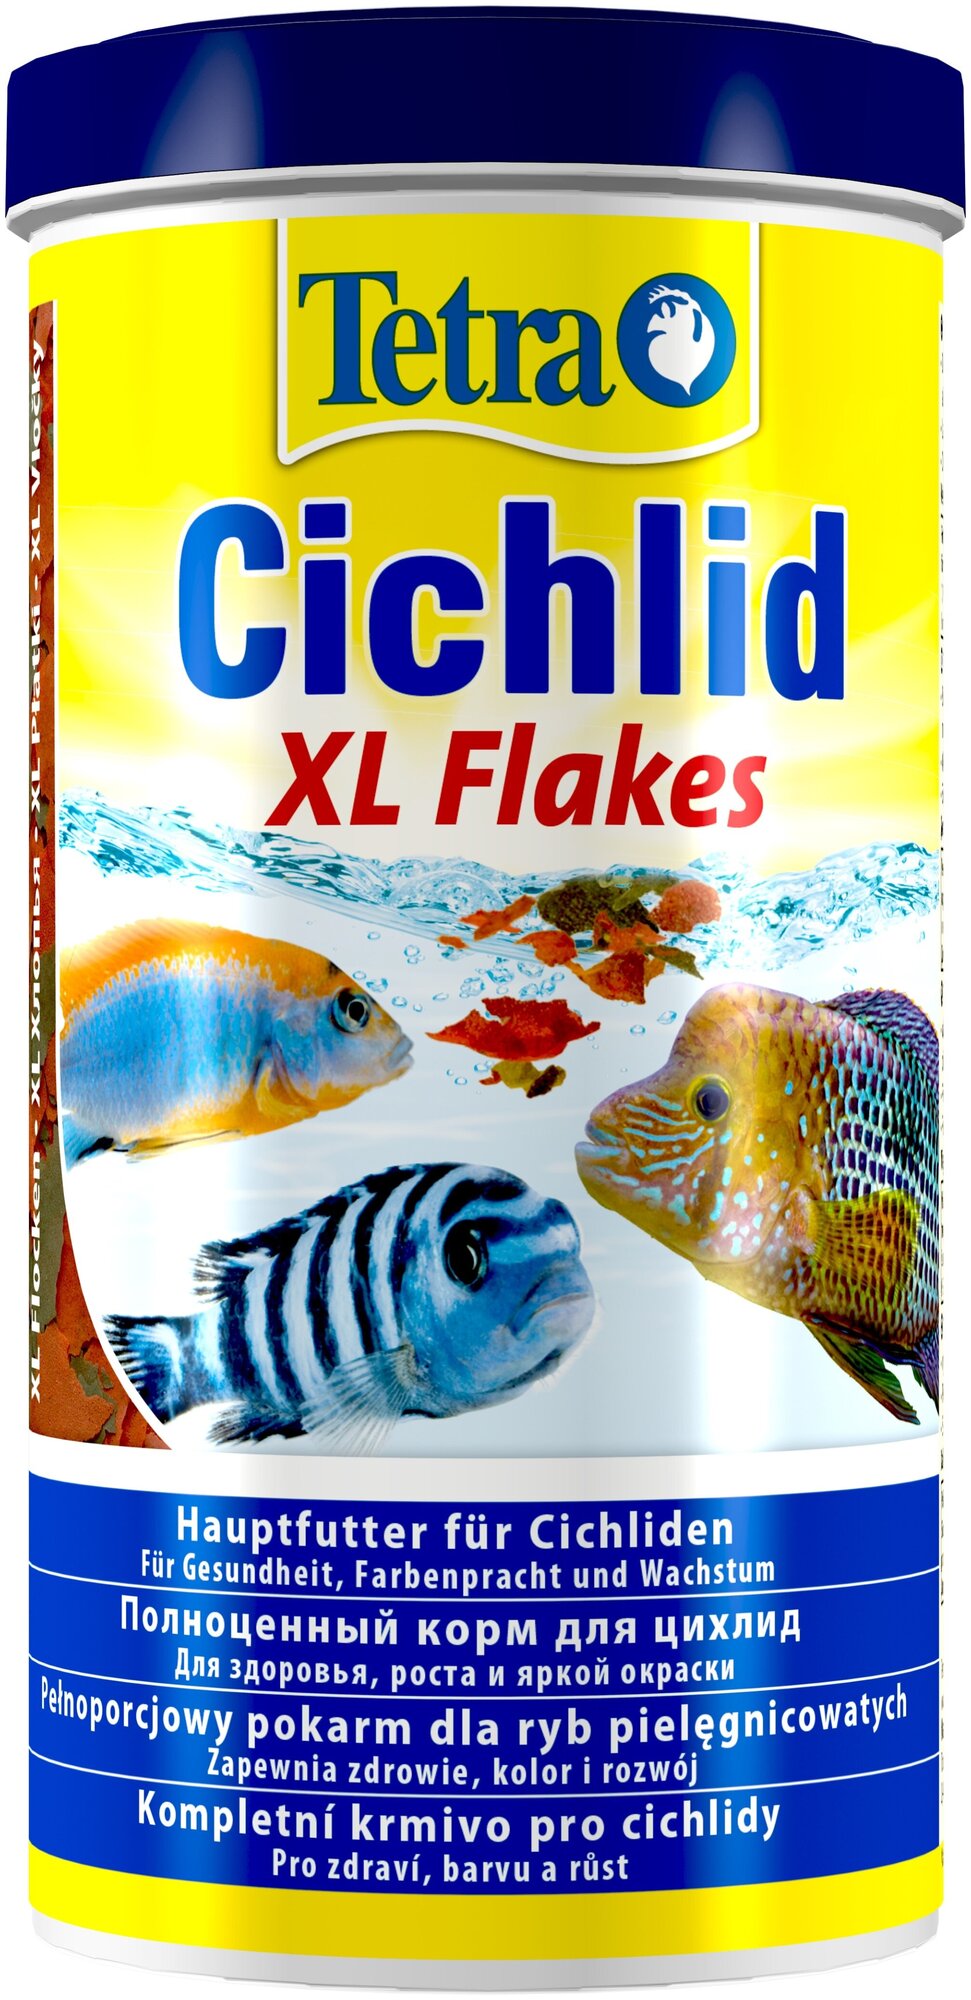 TetraCichlid XL Flakes (крупные хлопья) 1л Основной корм для цихлид и других крупных рыб